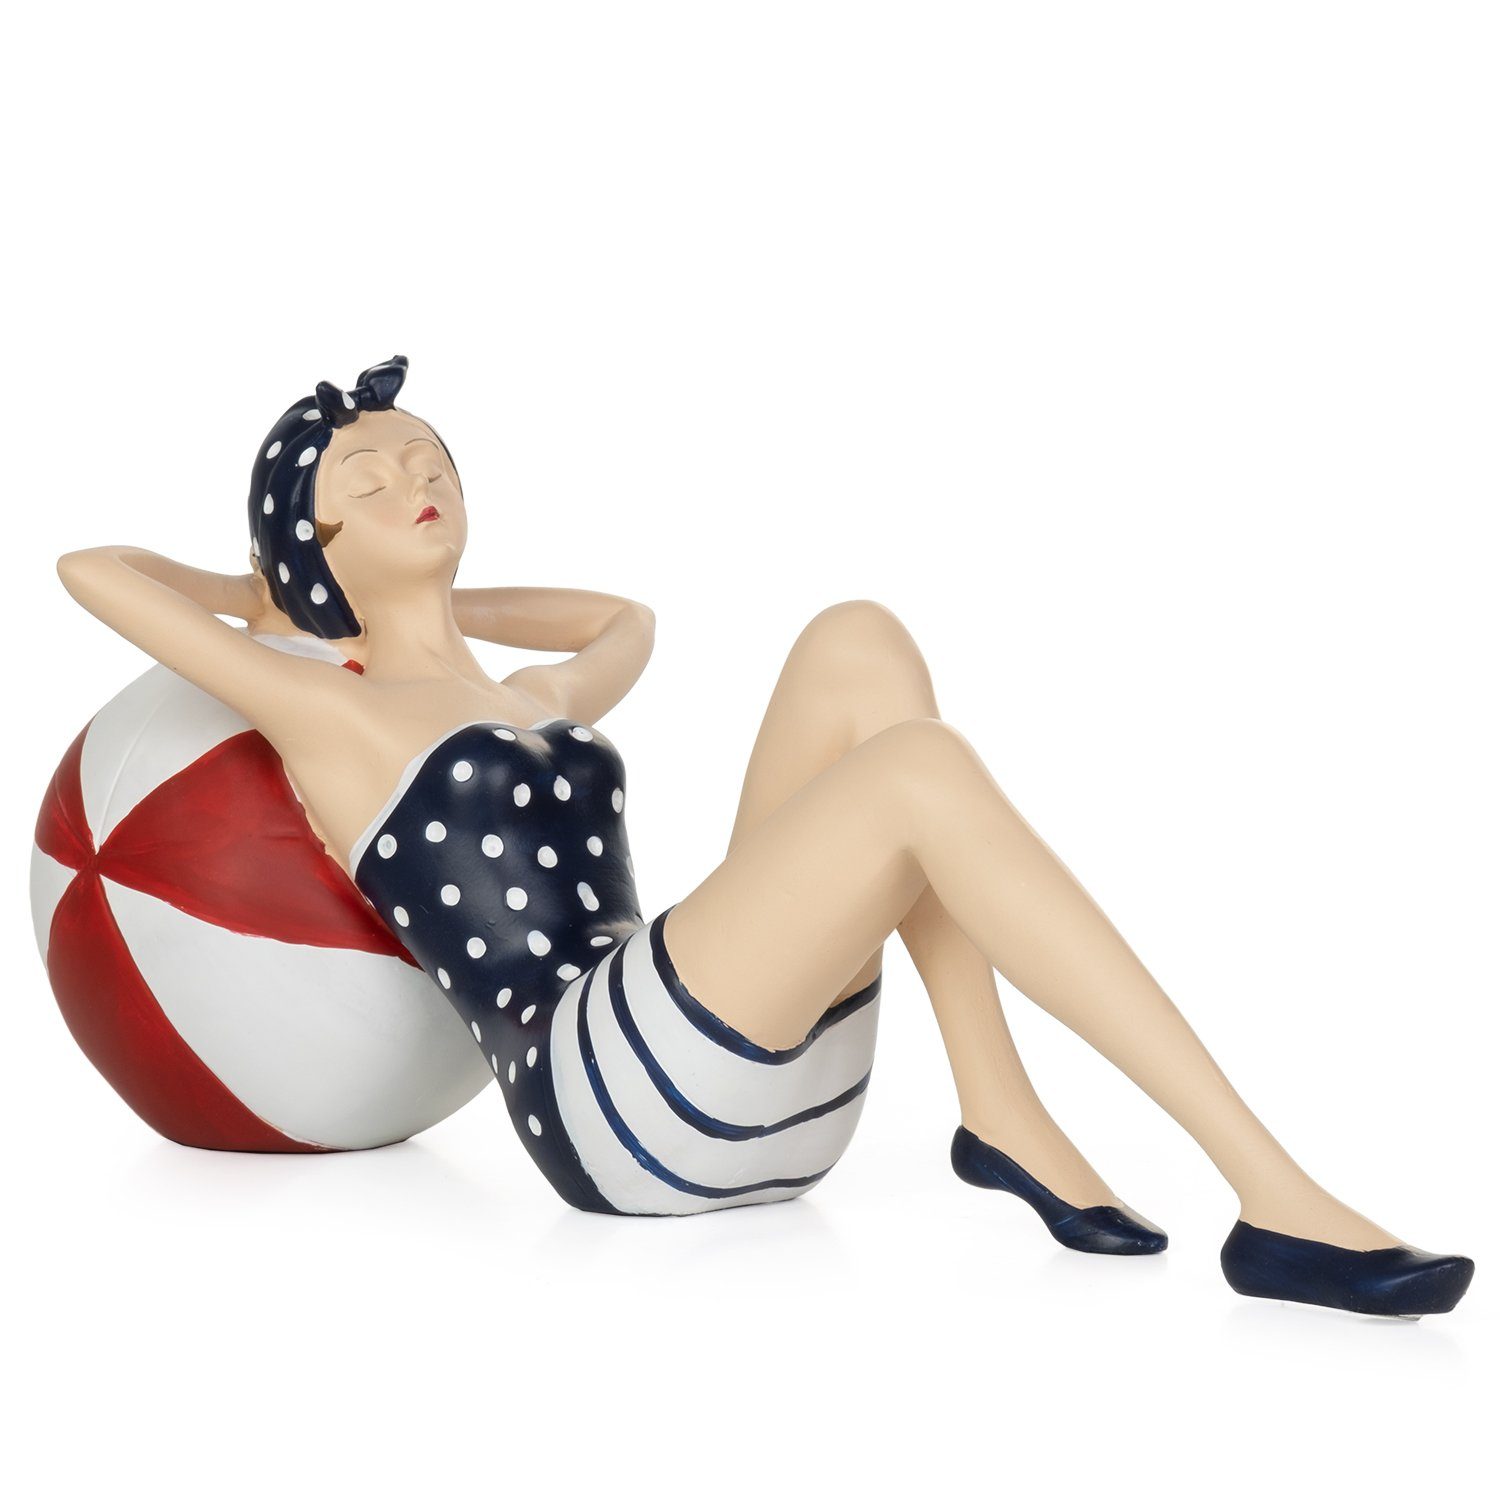 Moritz Dekofigur Deko-Figur Badenixe im Badeanzug entspannt sich auf Wasserball Maritim, Dekofigur aus Polyresin Dekoelement Dekoration Figuren